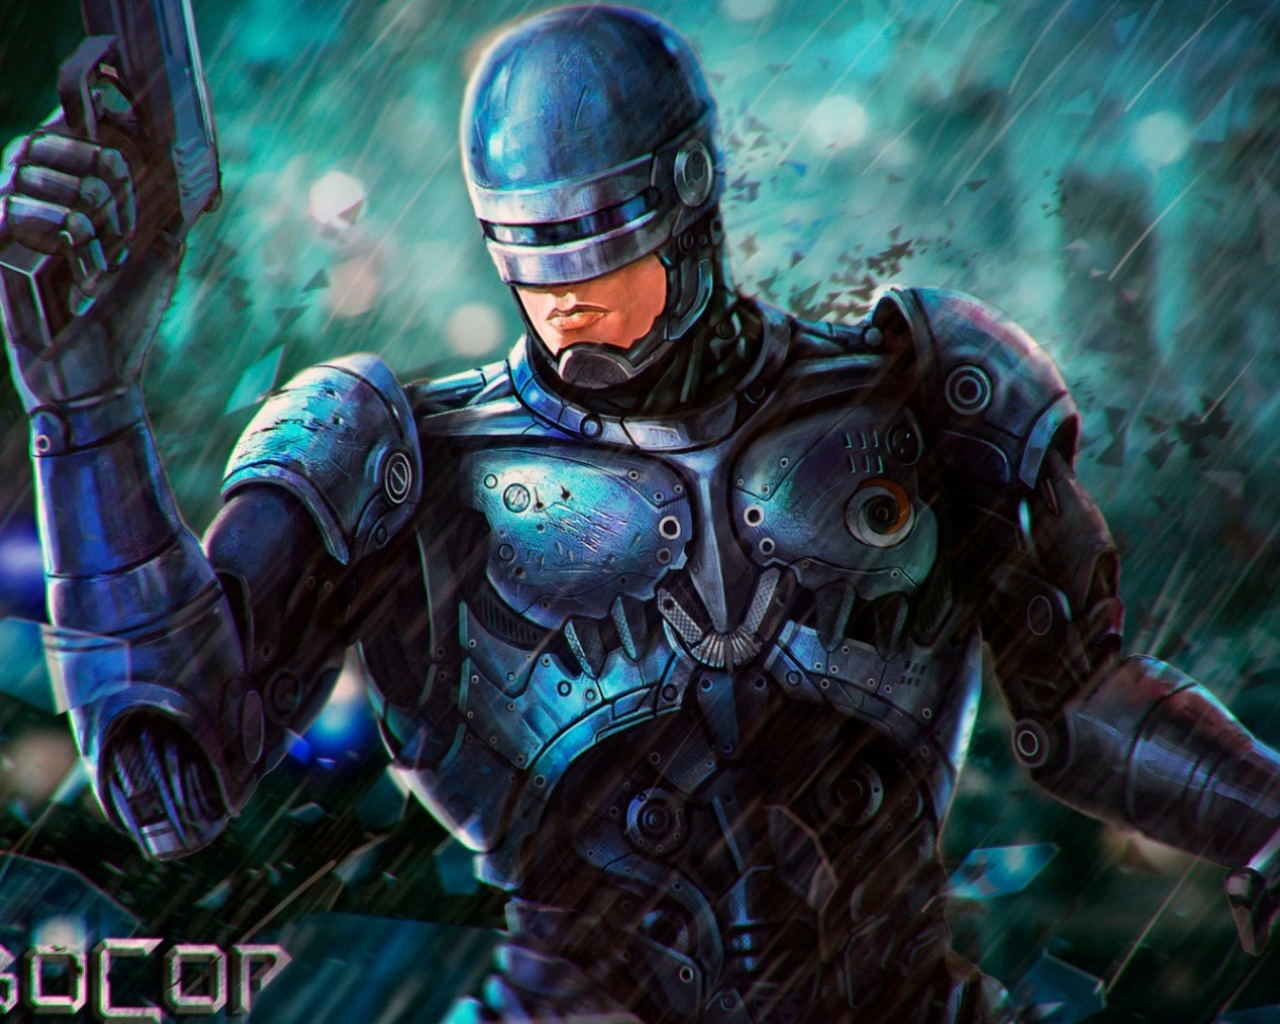 Das RoboCop Cyberpunk Film Wallpaper 1280x1024